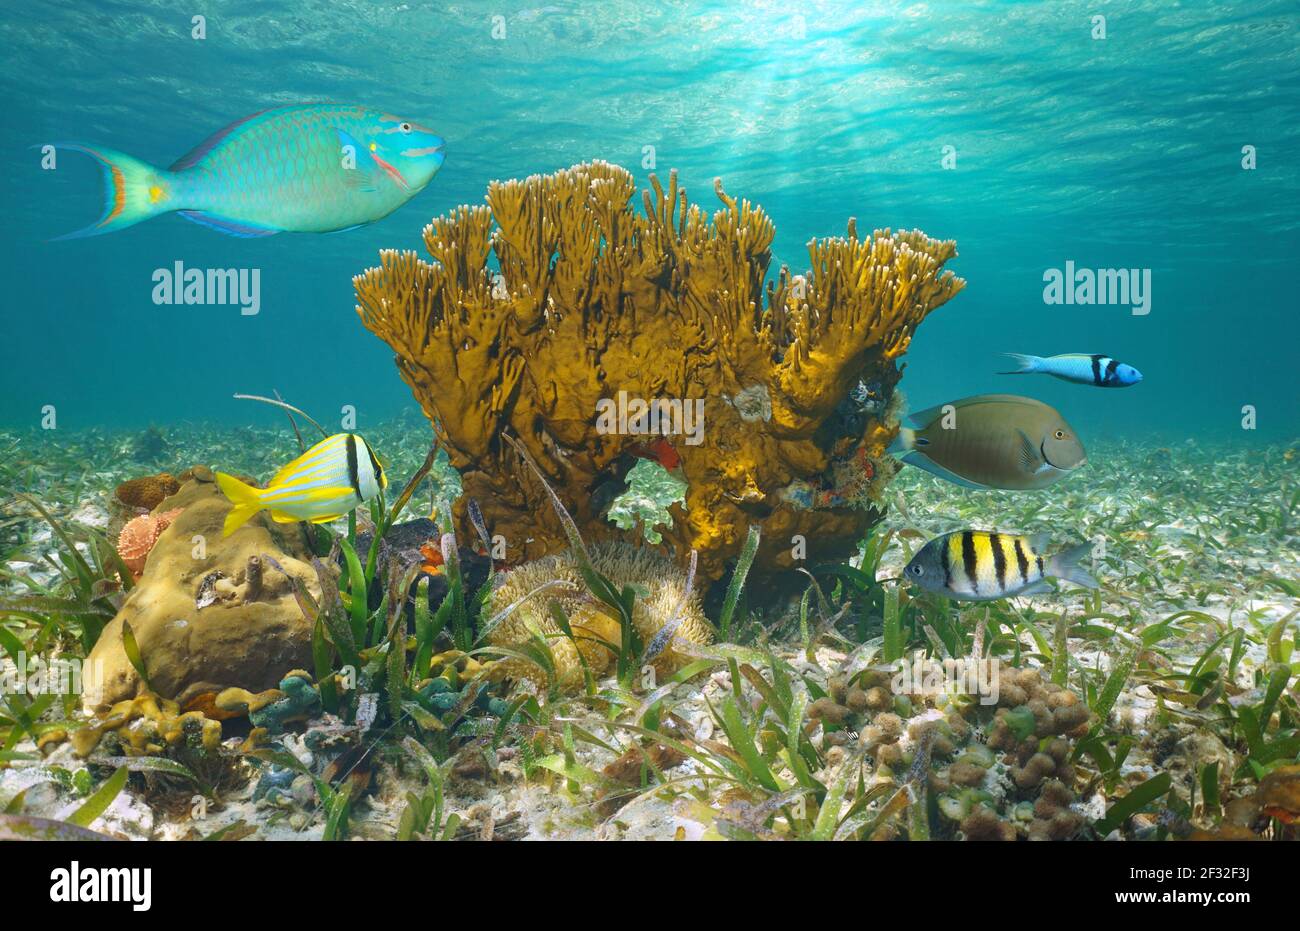 Vita marina nell'oceano, pesci tropicali con fuoco corallo sott'acqua, Bahamas Foto Stock